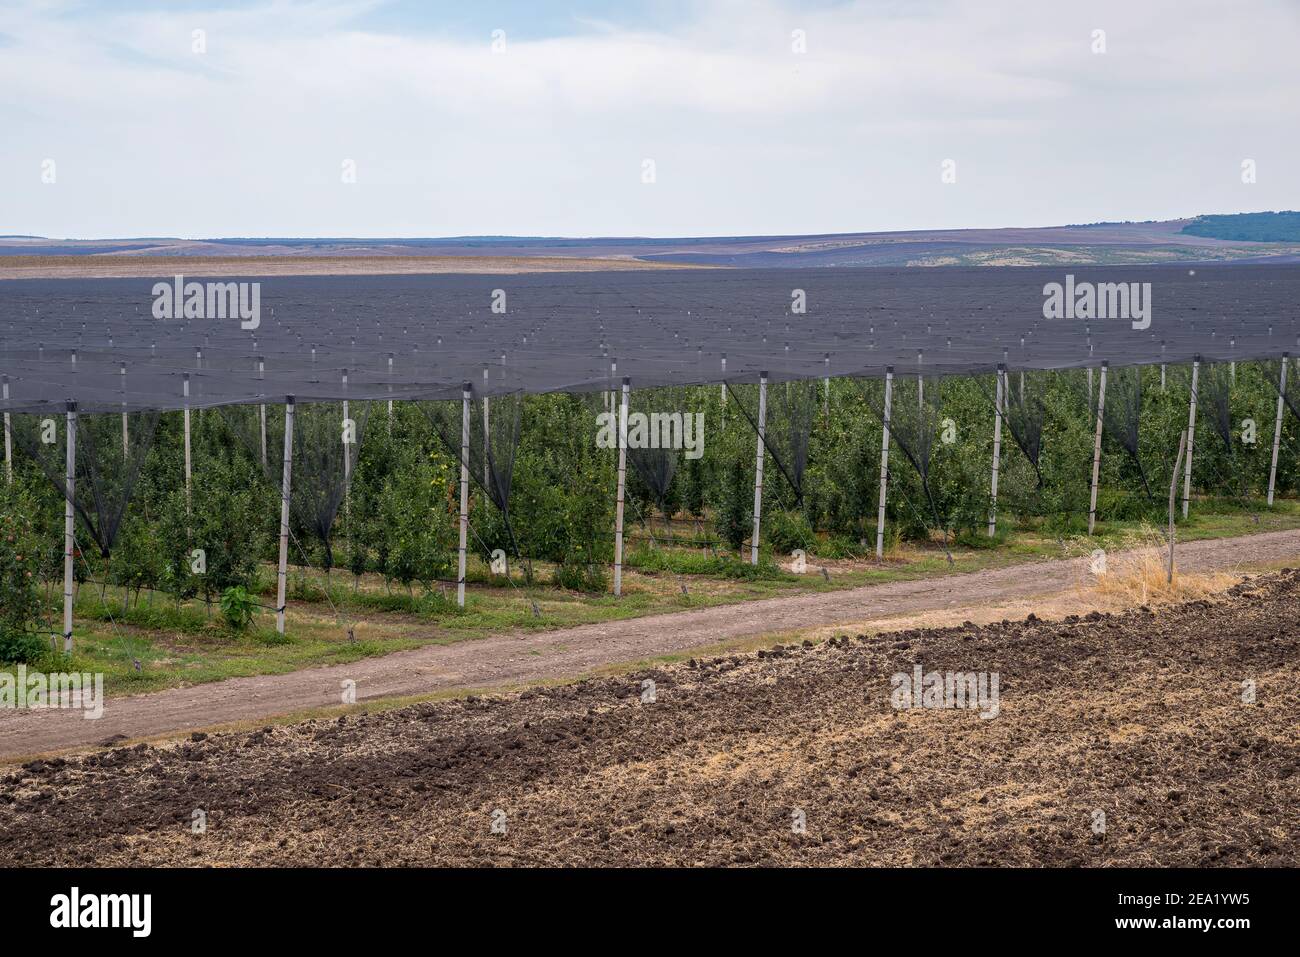 Apple plantation fruit production. Stock Photo